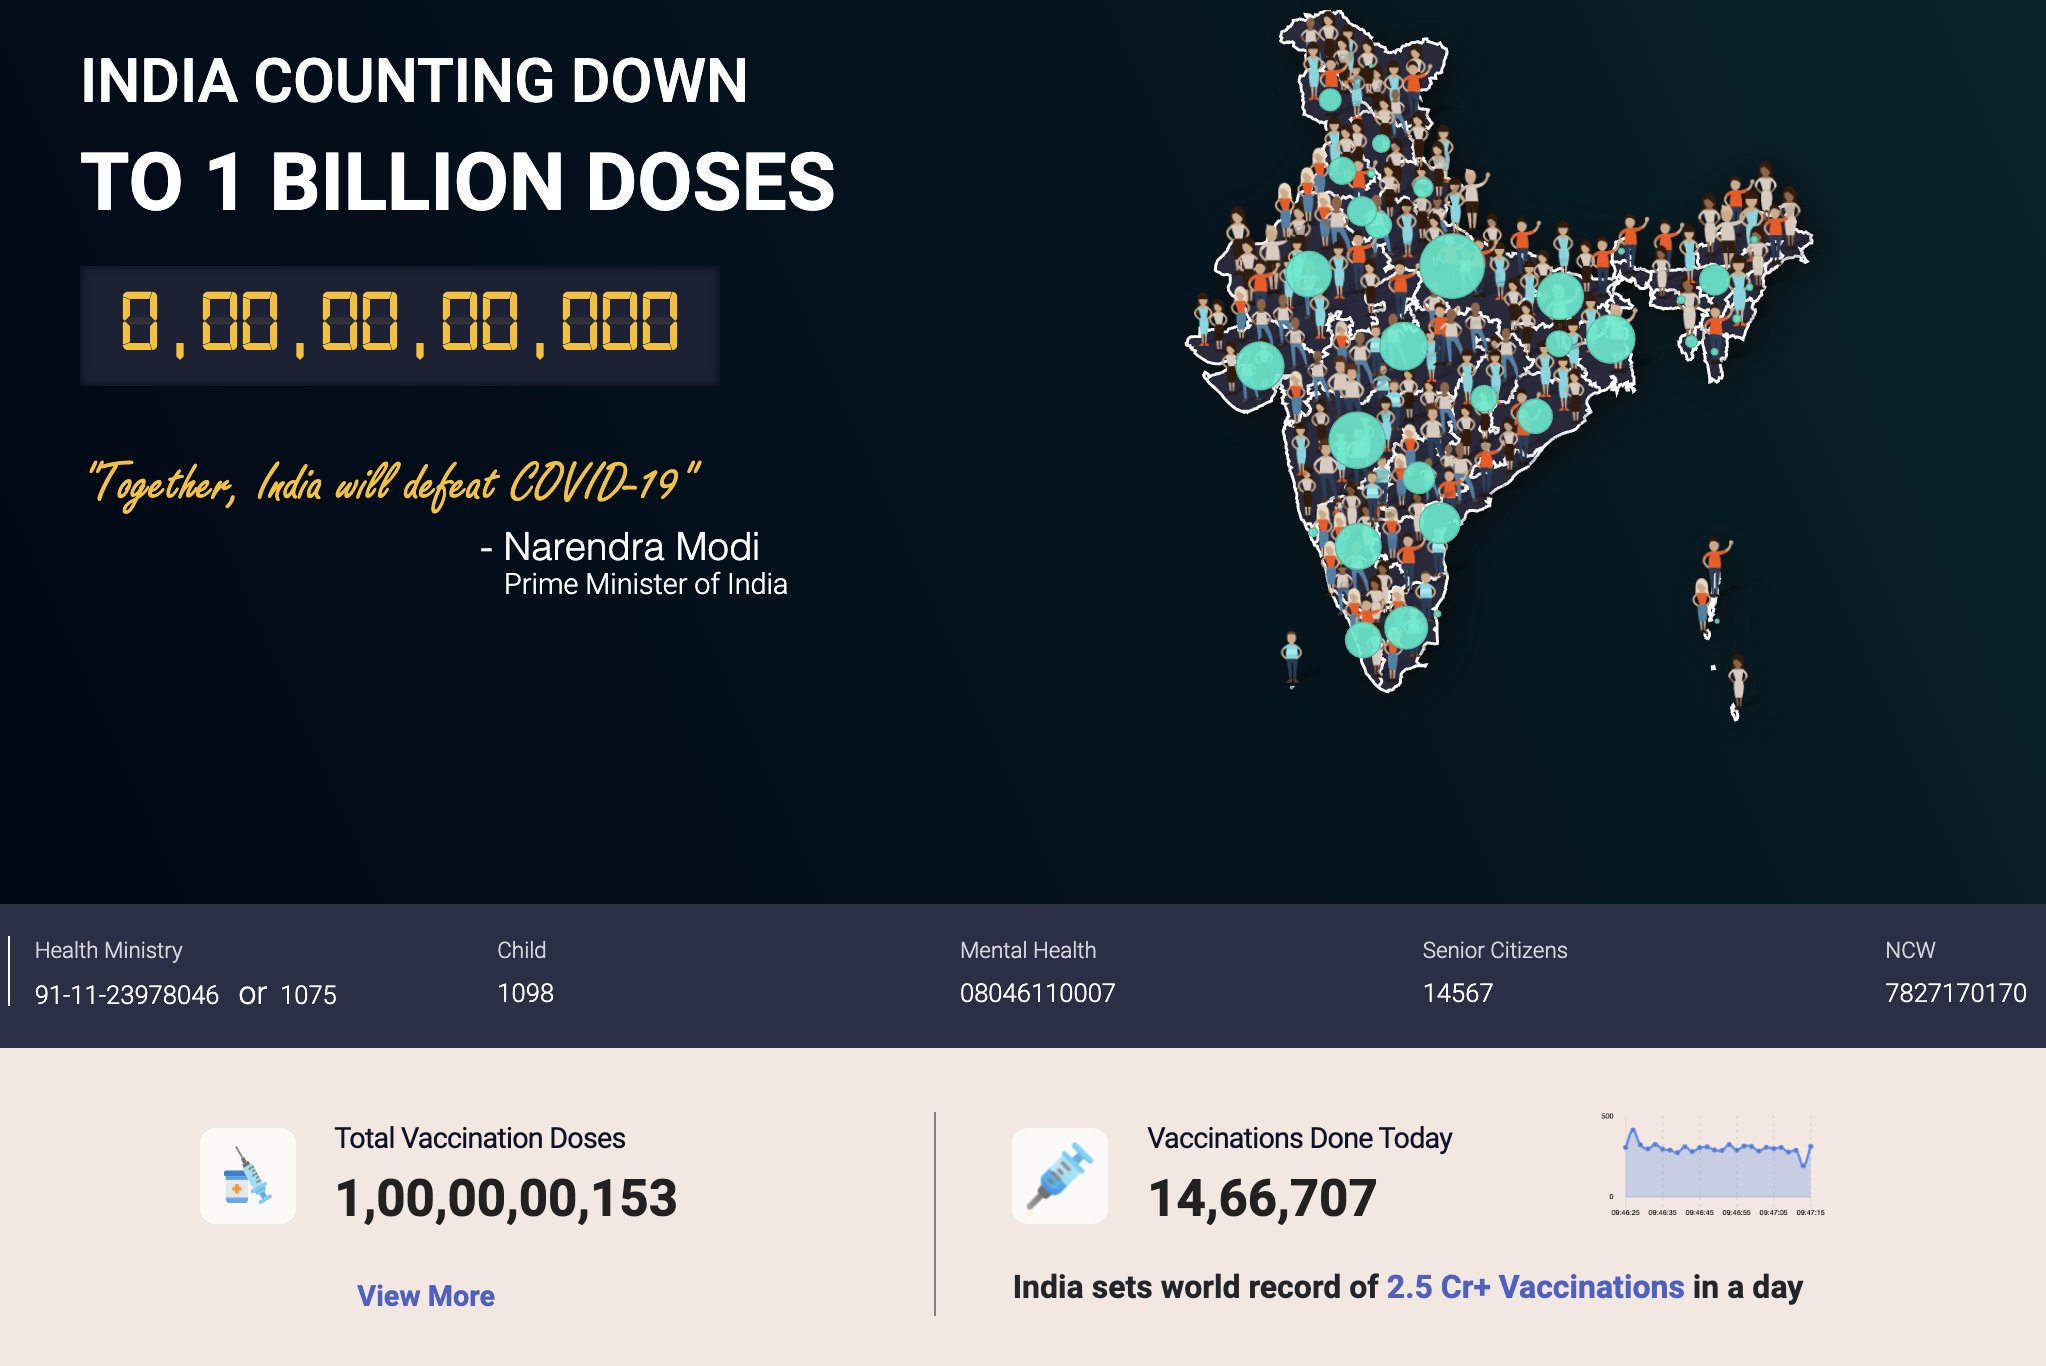 भारत में कोरोना वैक्सीनेशन का 100 करोड़ का आंकड़ा पूरा, दुनियाभर से मिल रहे हैं बधाई संदेश